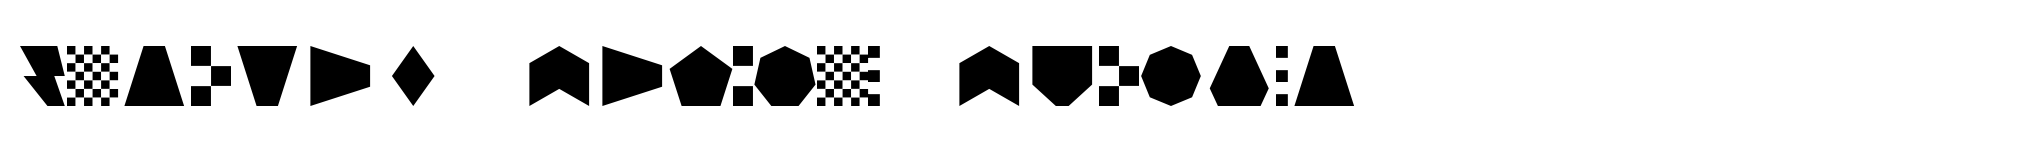 Bismuth Stencil Symbols image